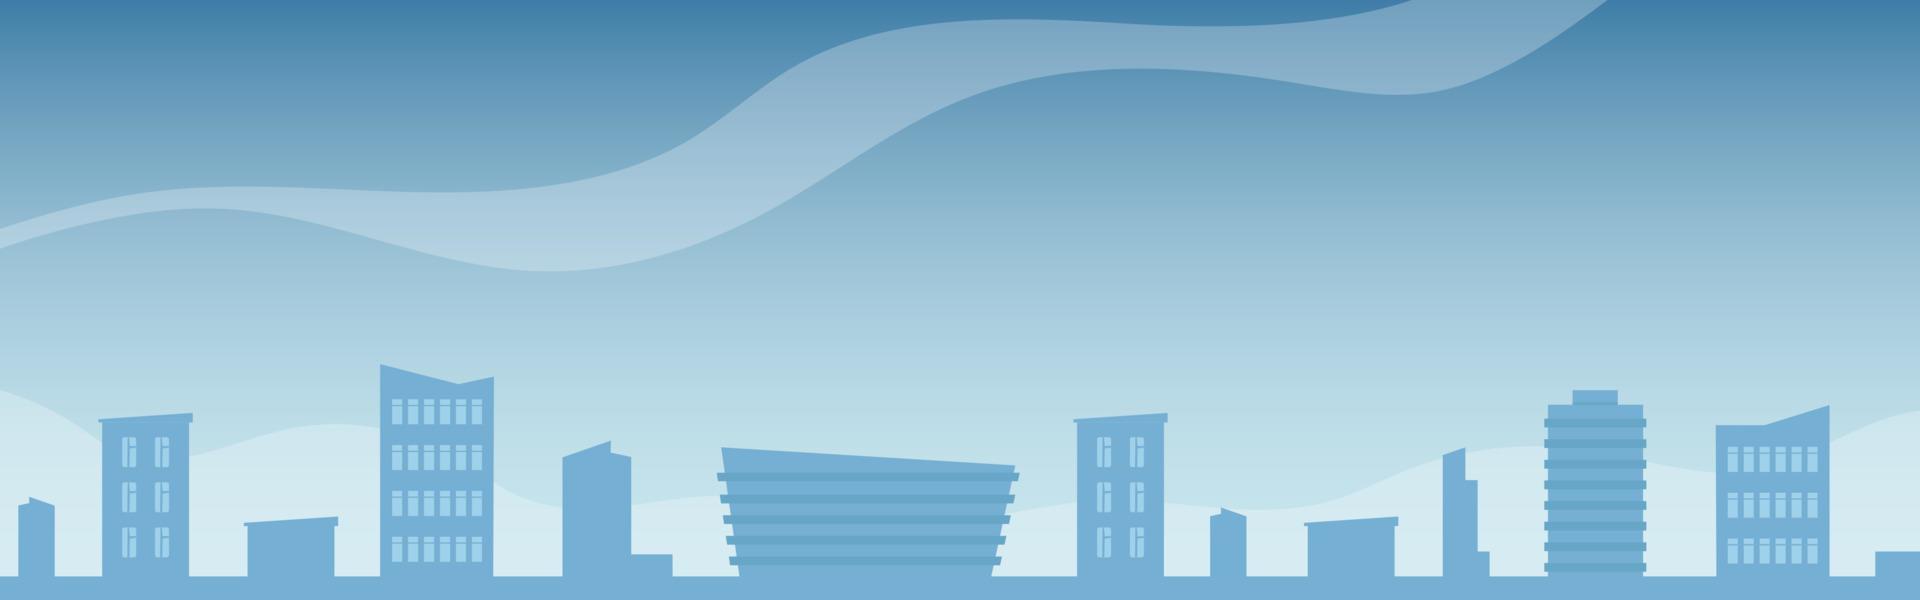 Stadtlandschaft mit Gebäuden und Wolken. blaue Stadtsilhouette. stadtbild hintergrund. Vektor-Illustration. vektor